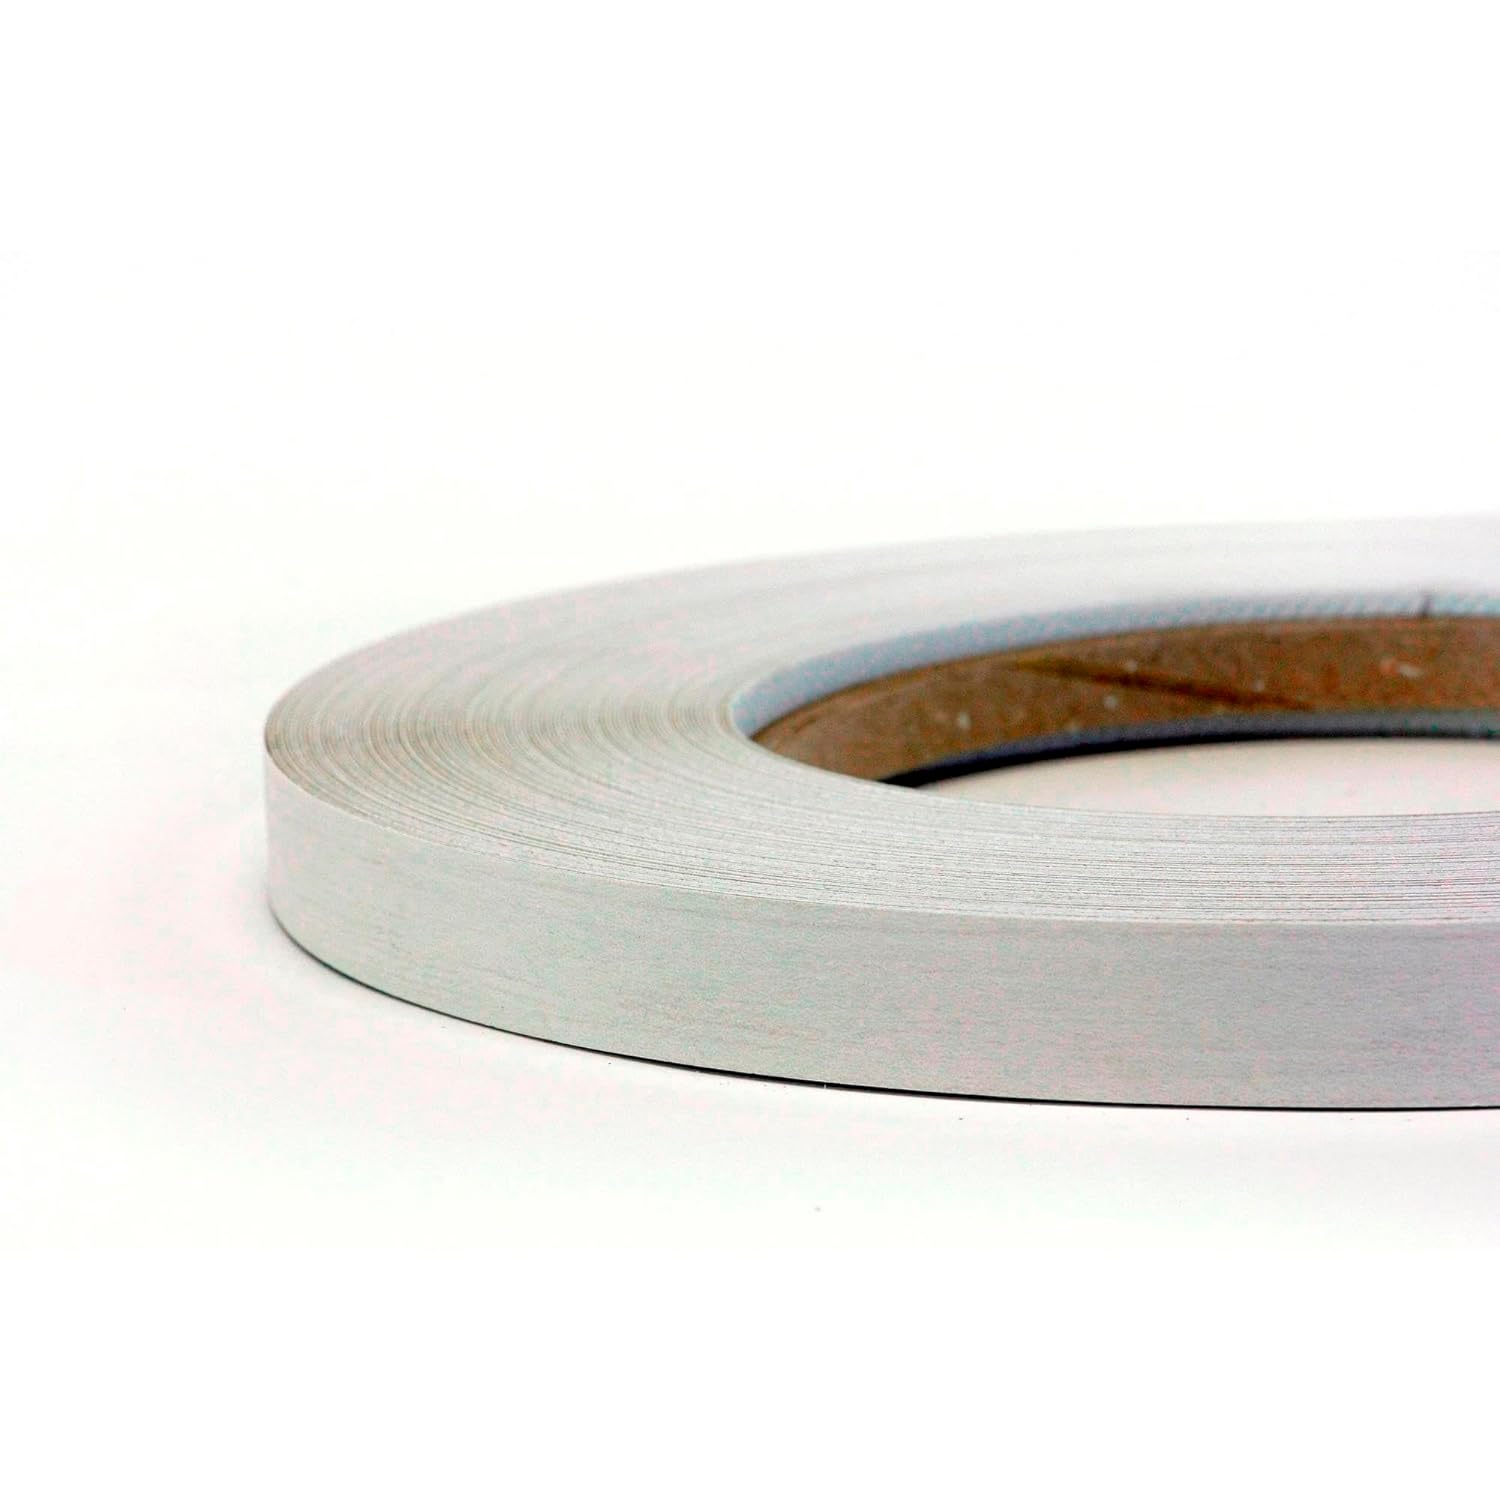 Roll of Pre-Glued Melamine Edgebanding Tape - Iron on Edgebanding (Birch)